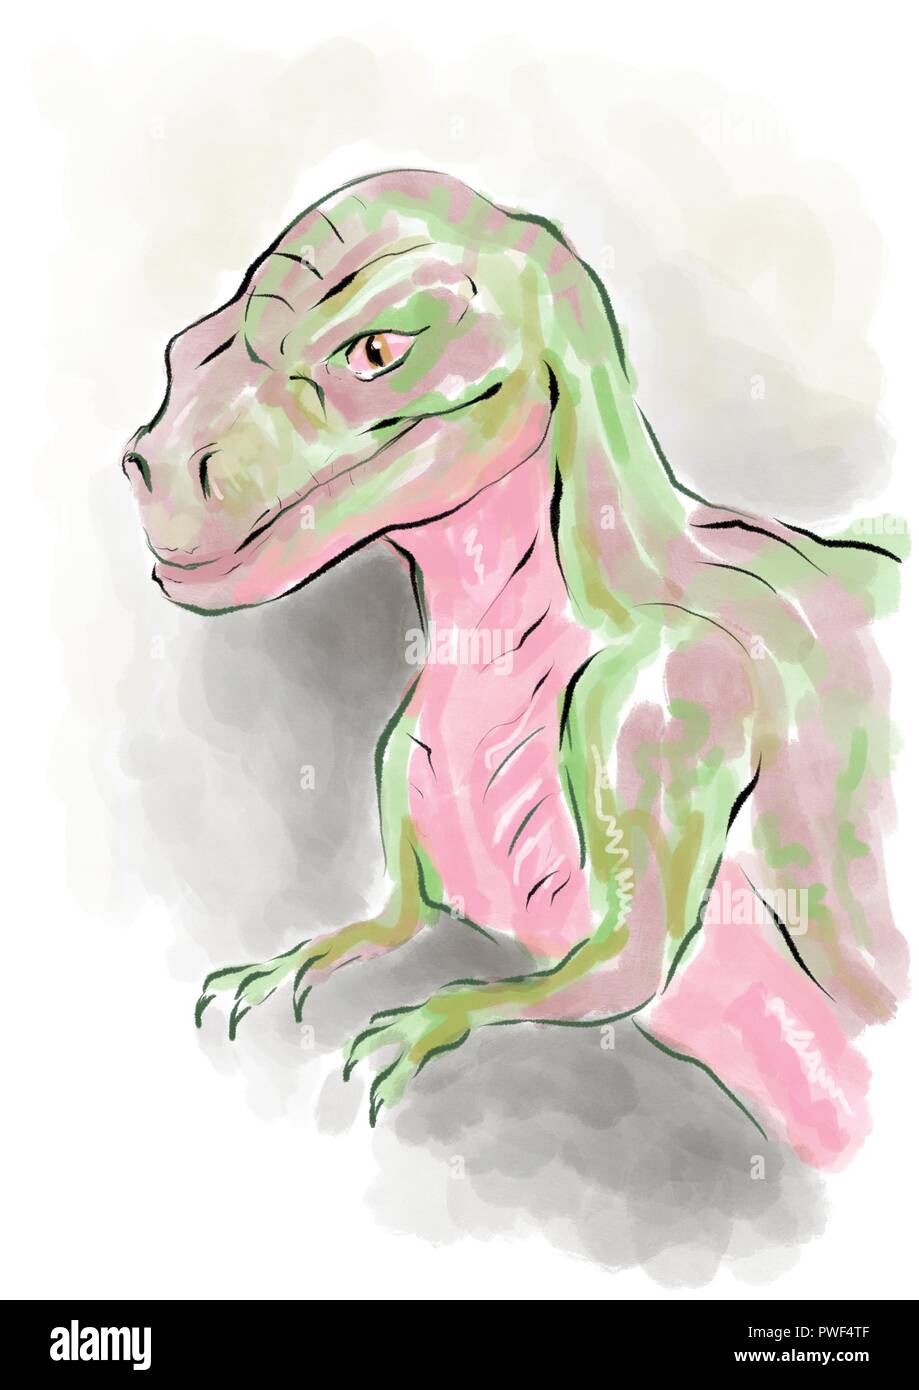 Tyrannosaurus rex ilustración Foto de stock